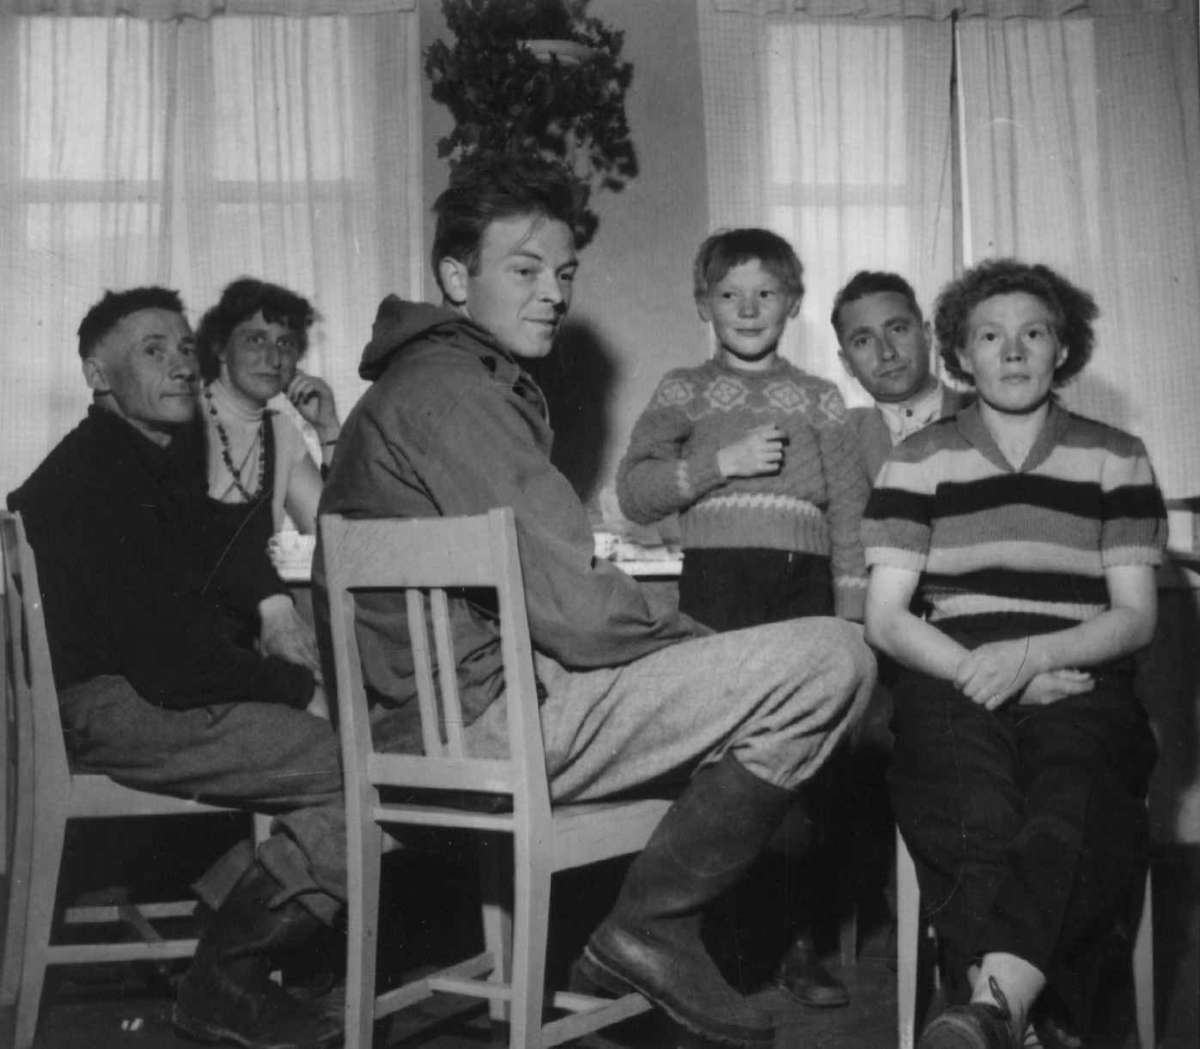 NF. Tjenestereise. K. Johnsen, S. Sejersted, H. Eidheim, Holmberg jr., A. Nesheim og M. Holmberg sitter innendørs under kafferast i Gava 1952.